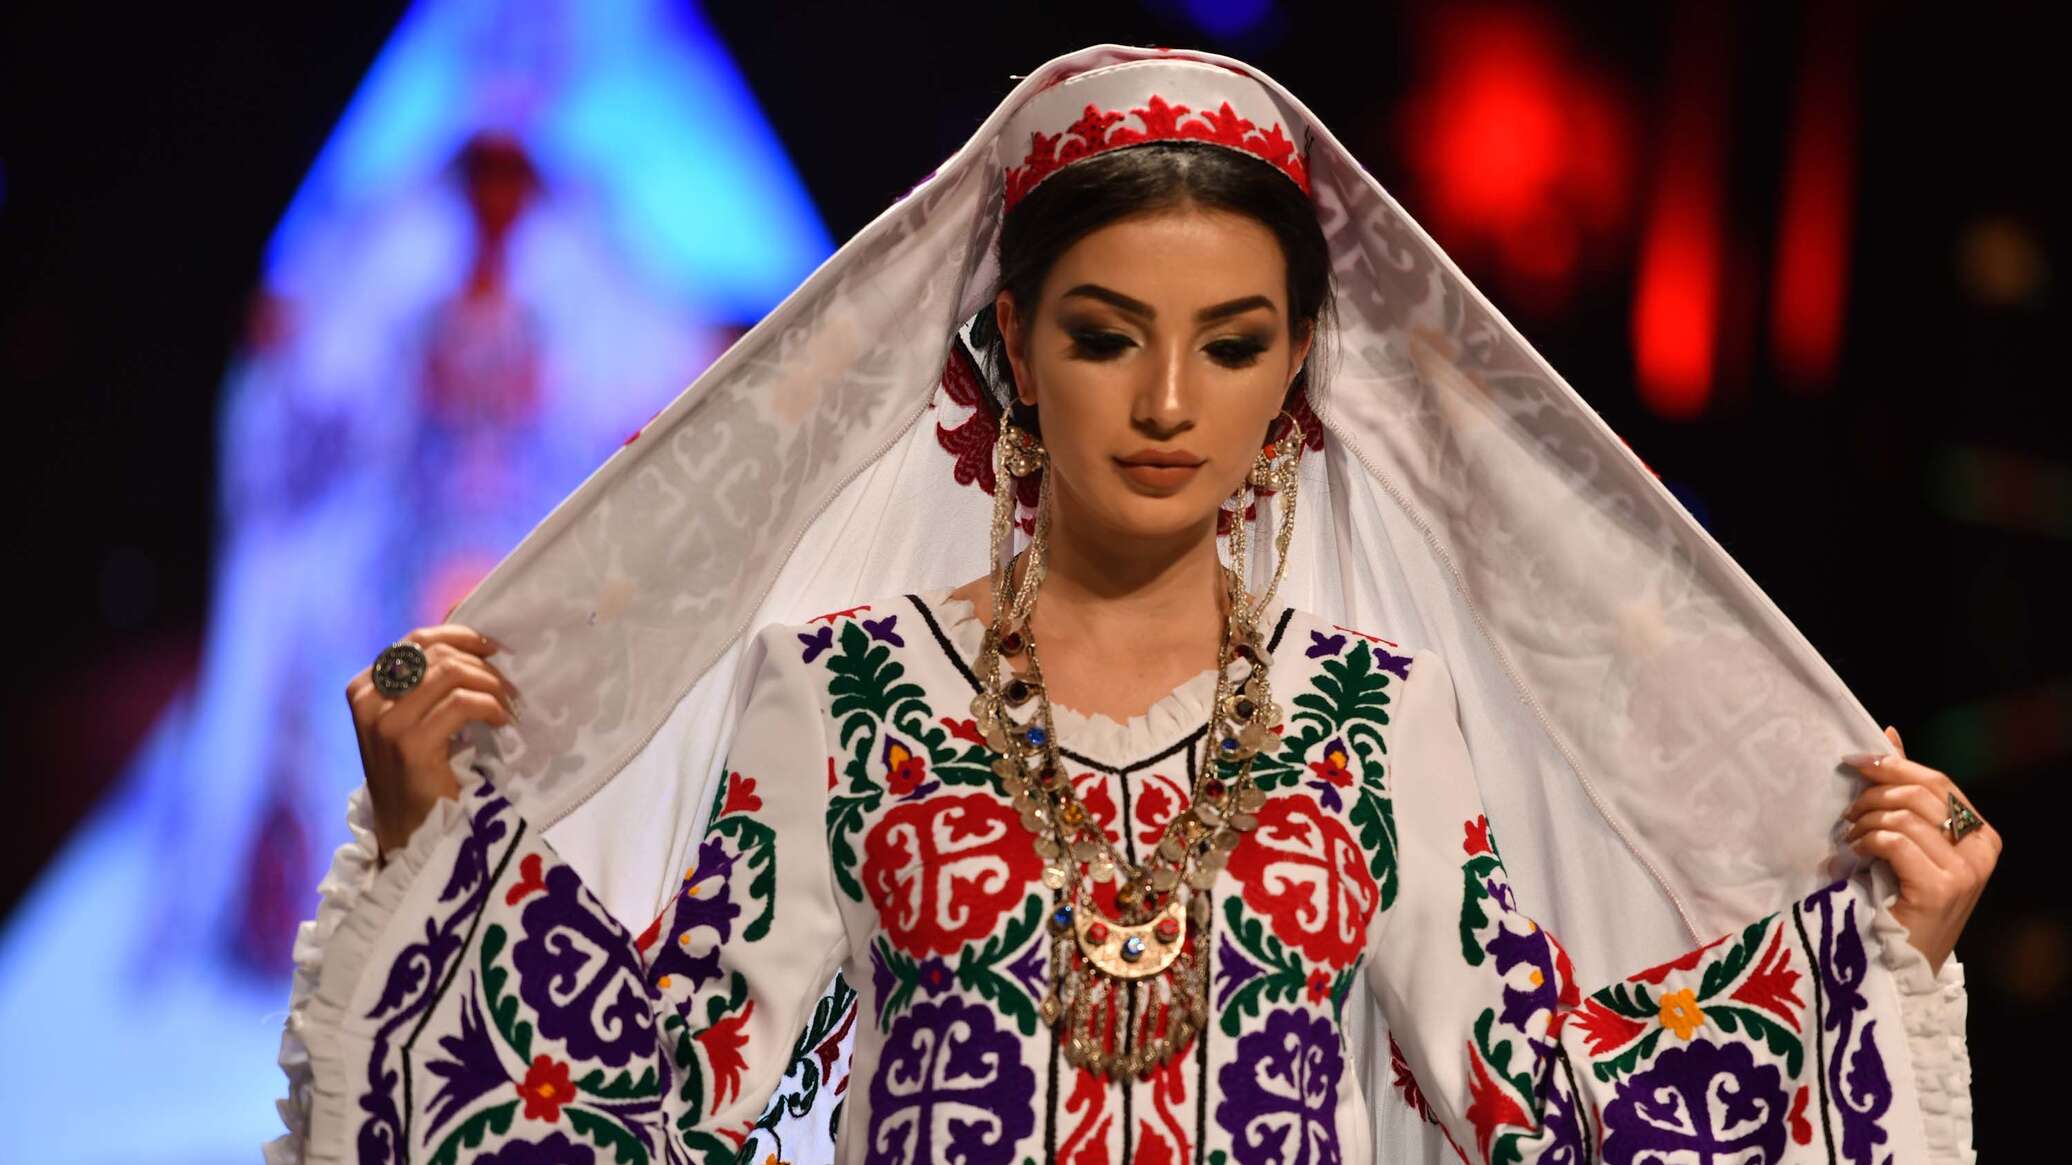 Национальная одежда в таджикистане